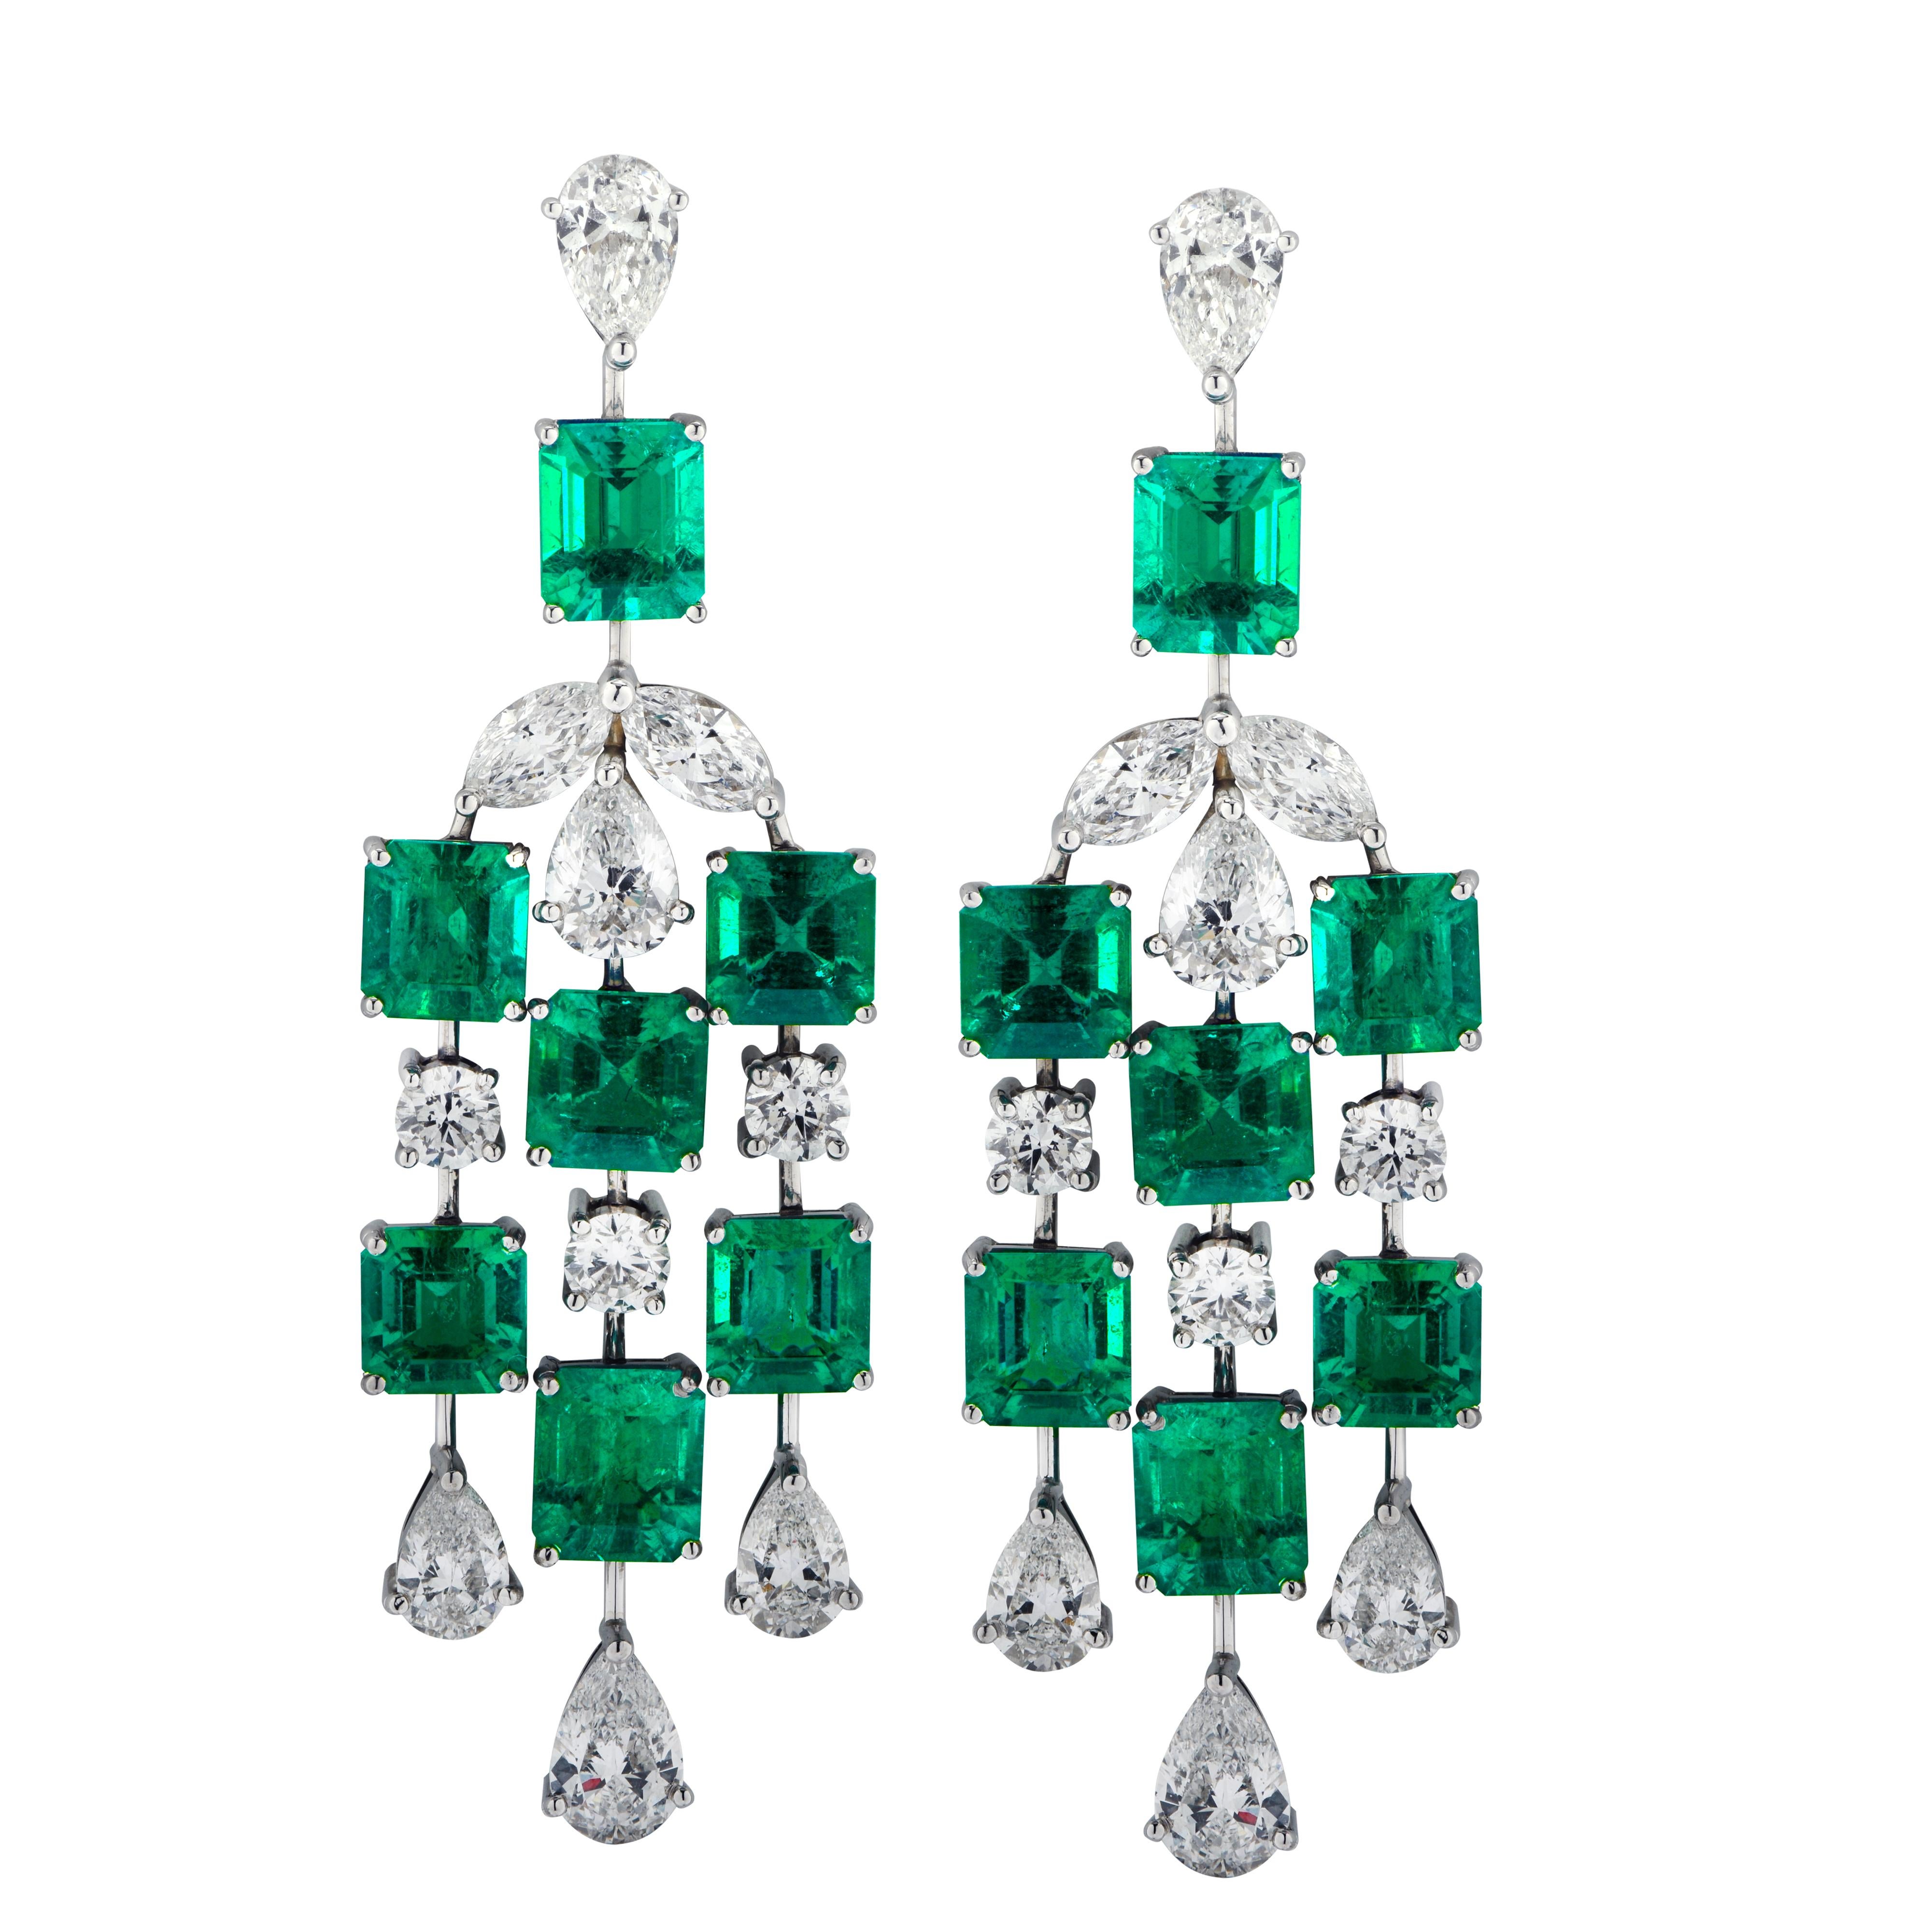 Sensationnelles boucles d'oreilles pendantes Vivid Diamonds en platine, mettant en valeur 14 émeraudes de Colombie de taille émeraude et de couleur vert vif pesant 11.11 carats au total, accentuées par 20 diamants de taille poire, marquise et ronde